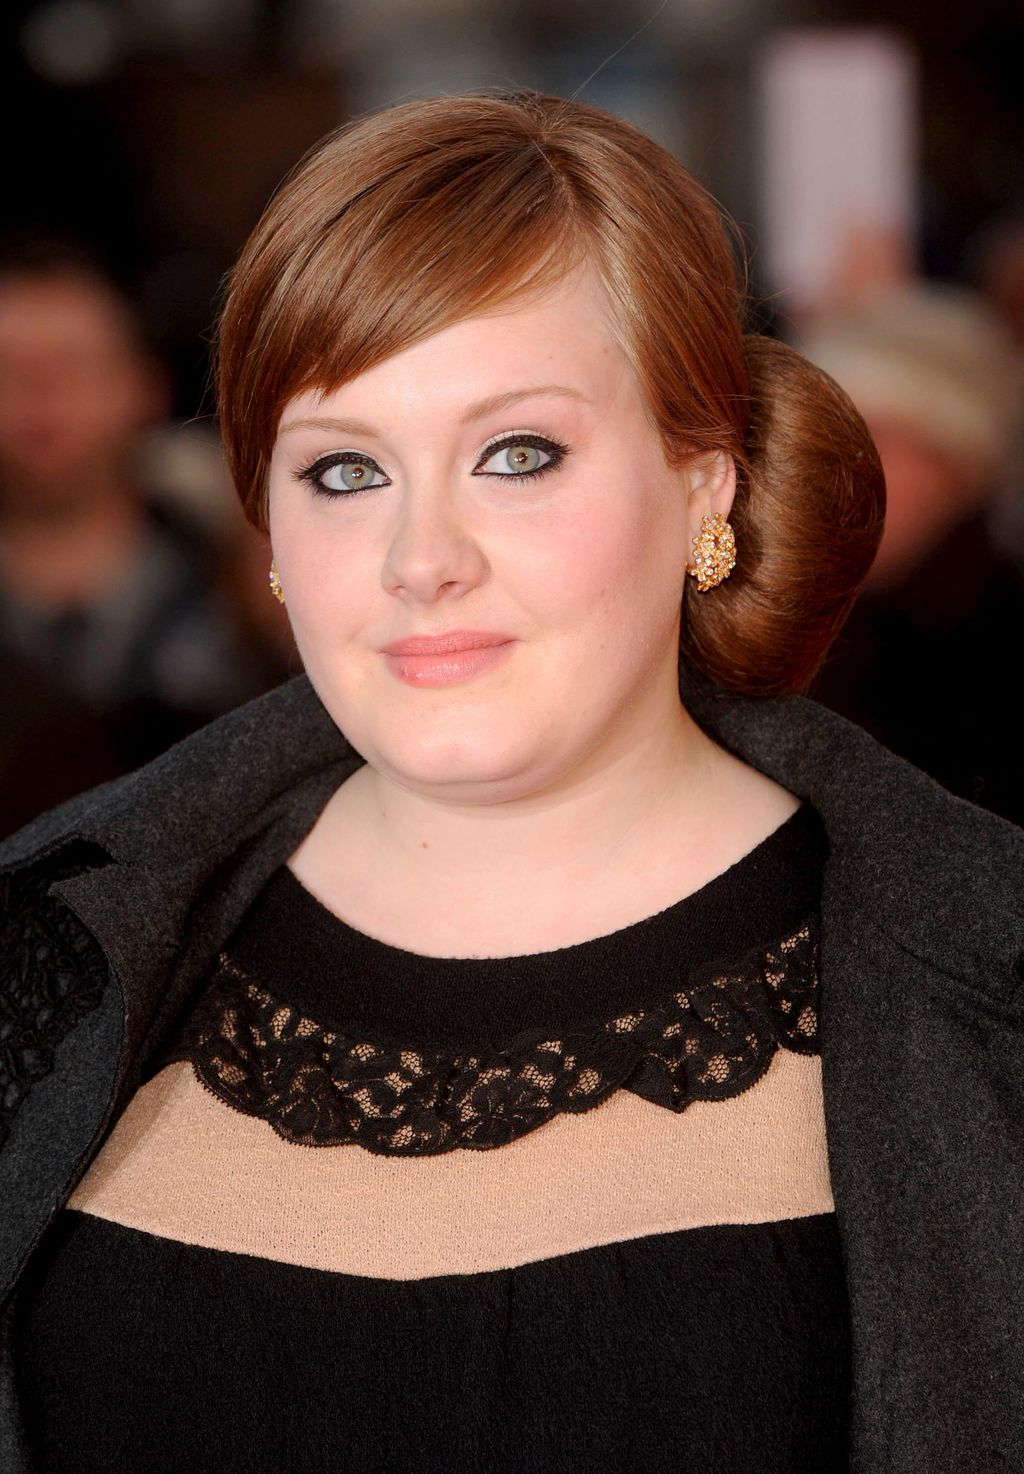 33 vuotta täyttävä Adele hehkuu tuoreissa kuvissa: näin tähti on muuttunut